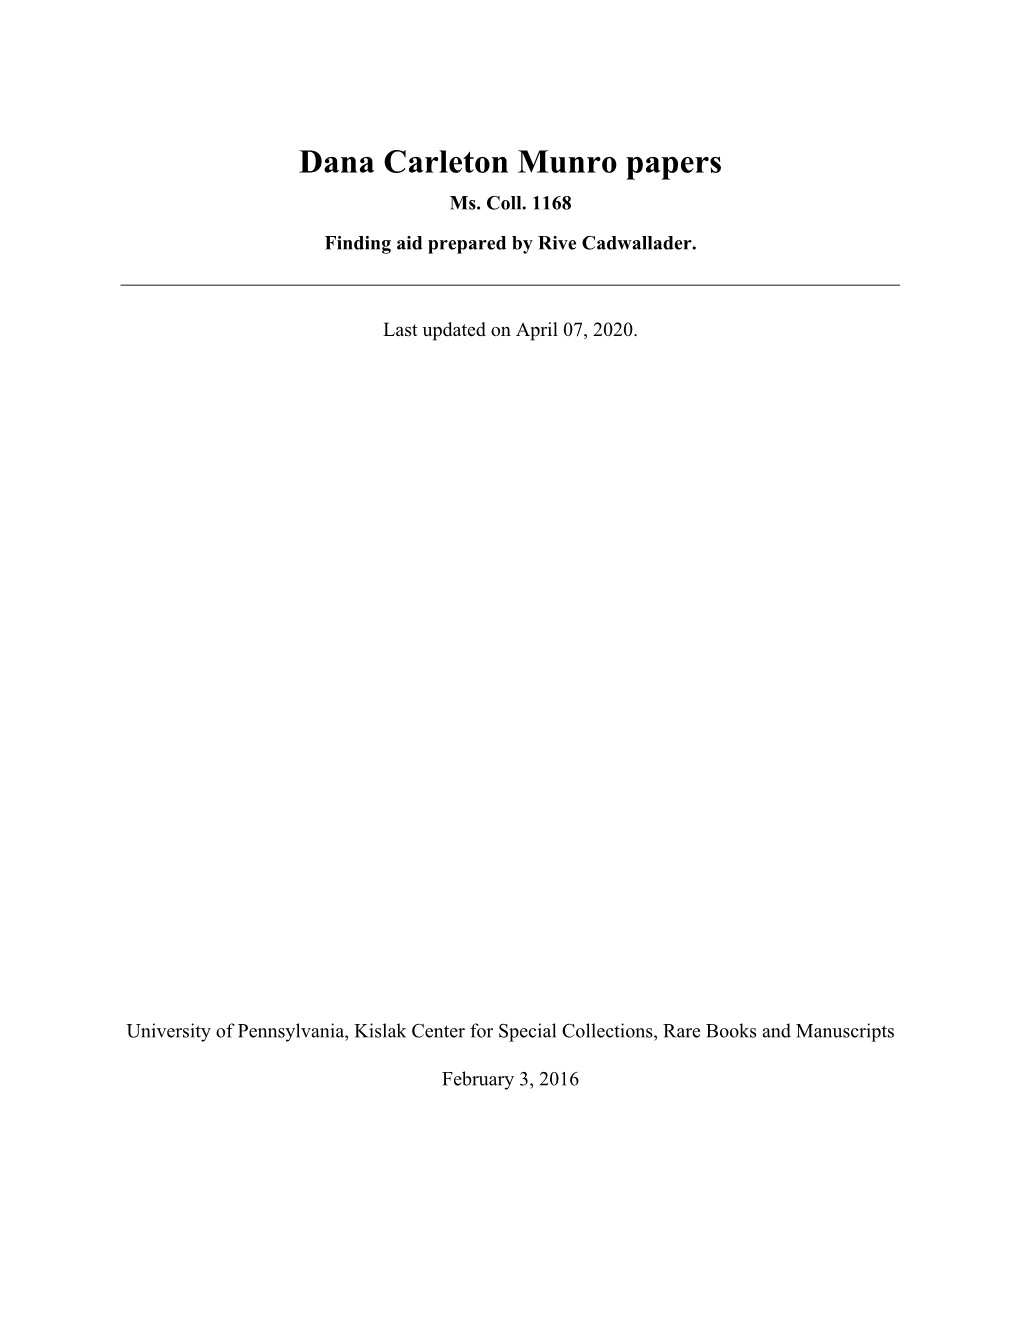 Dana Carleton Munro Papers Ms